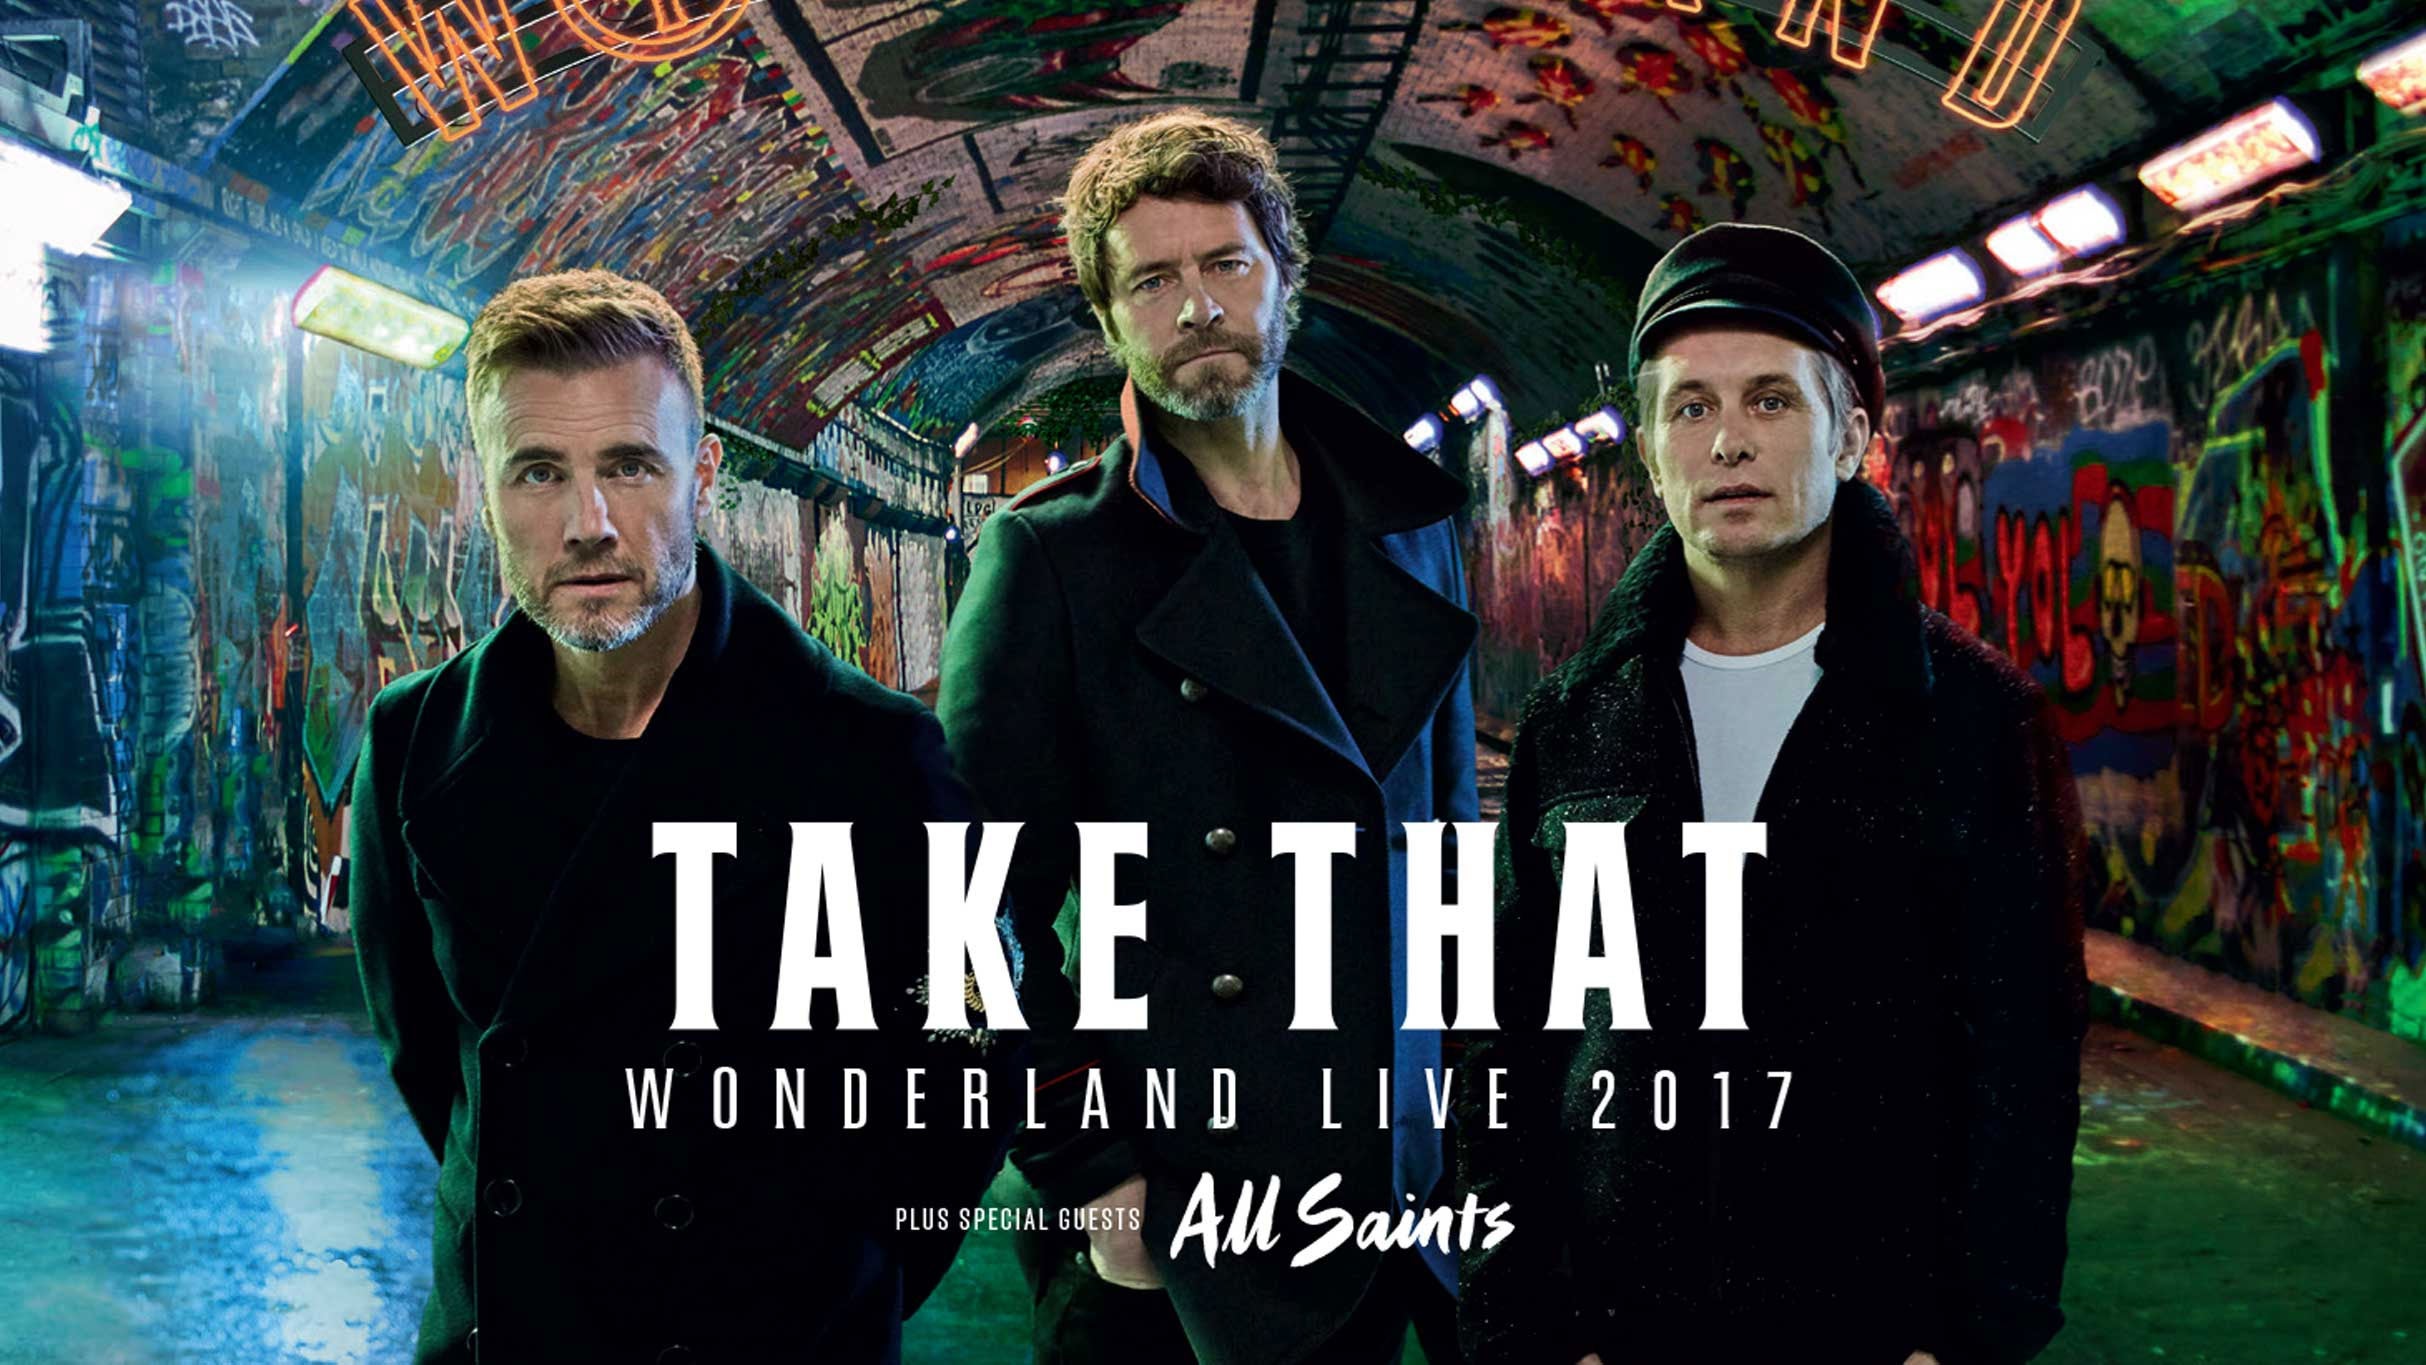 Take That: This Life On Tour